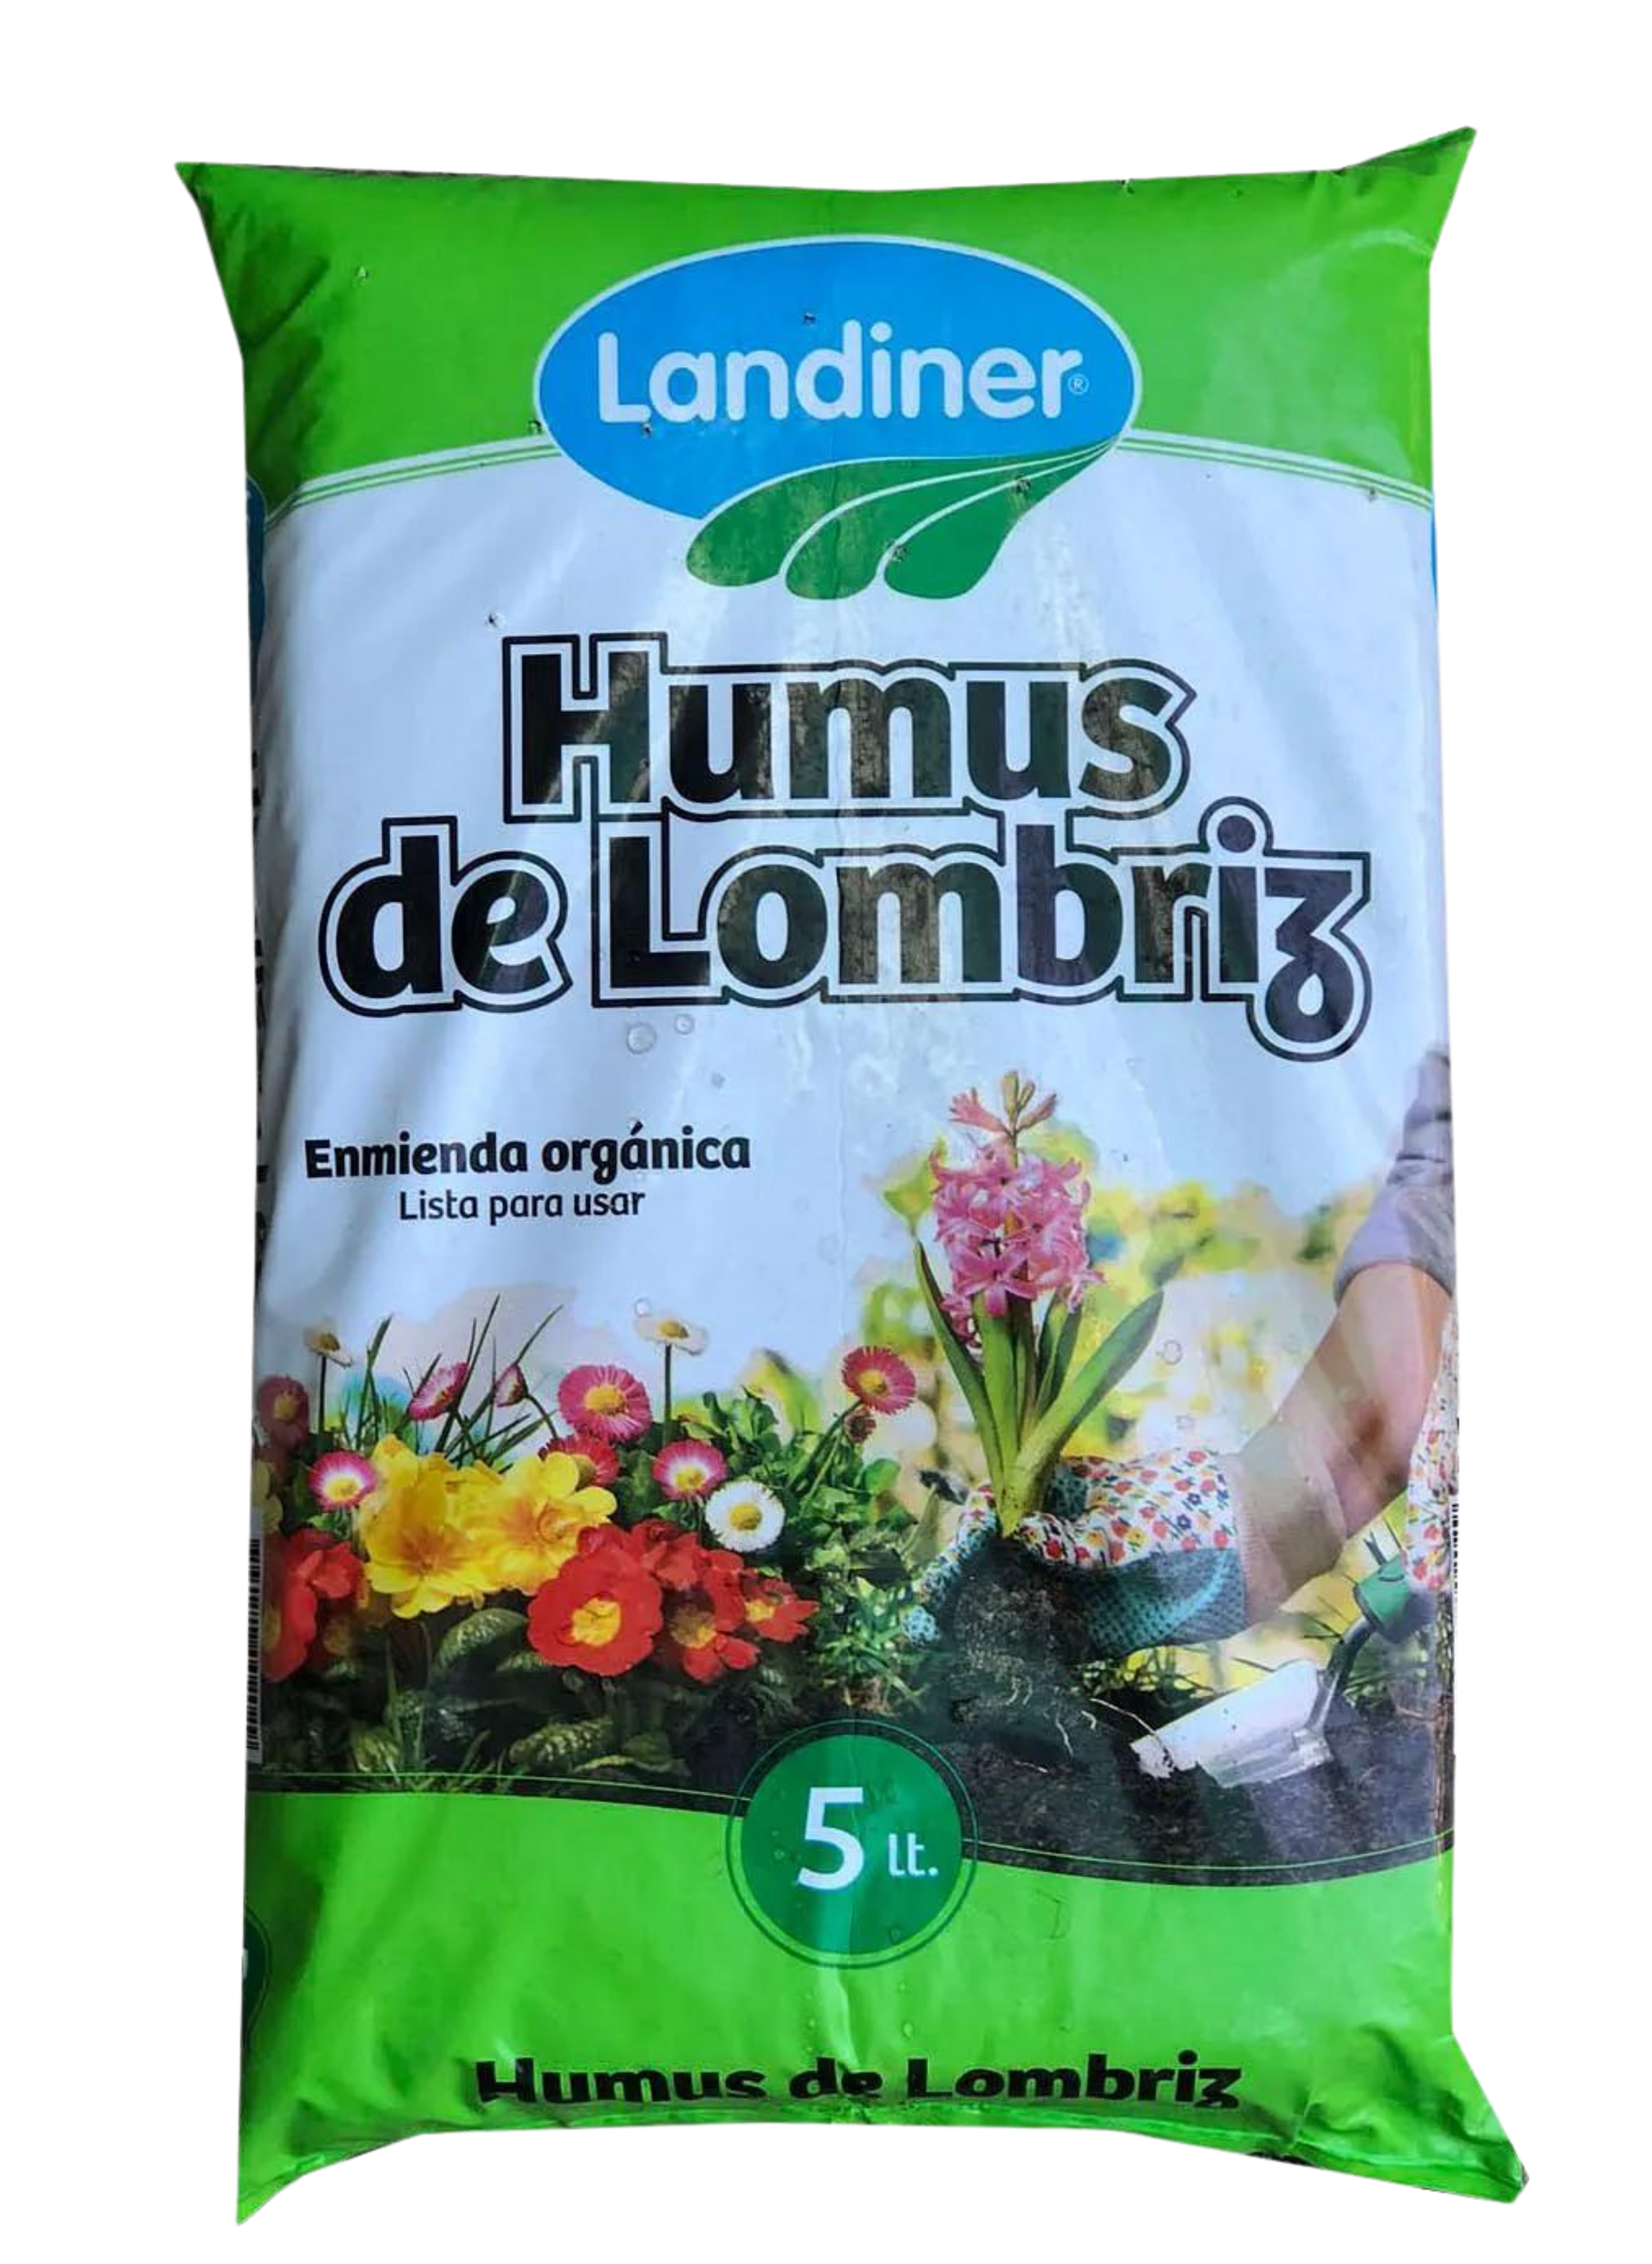 Imagen de bolsa de humus de lombriz